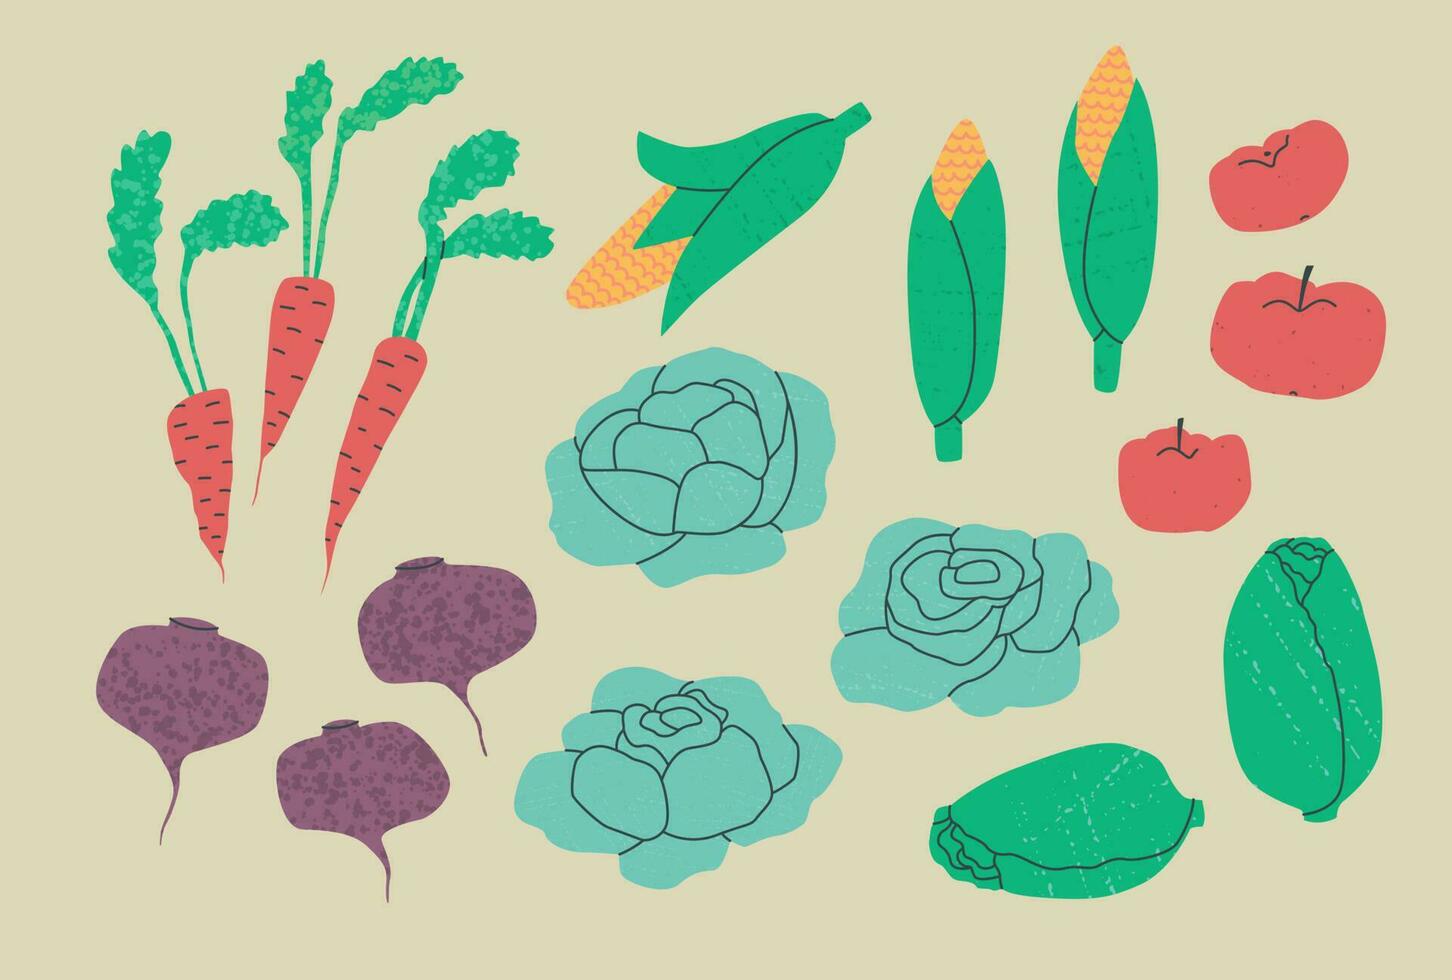 uppsättning av olika grönsaker - kål, morötter, rödbetor, majs, tomater, isberg sallad. vektor platt trend illustration med texturer.